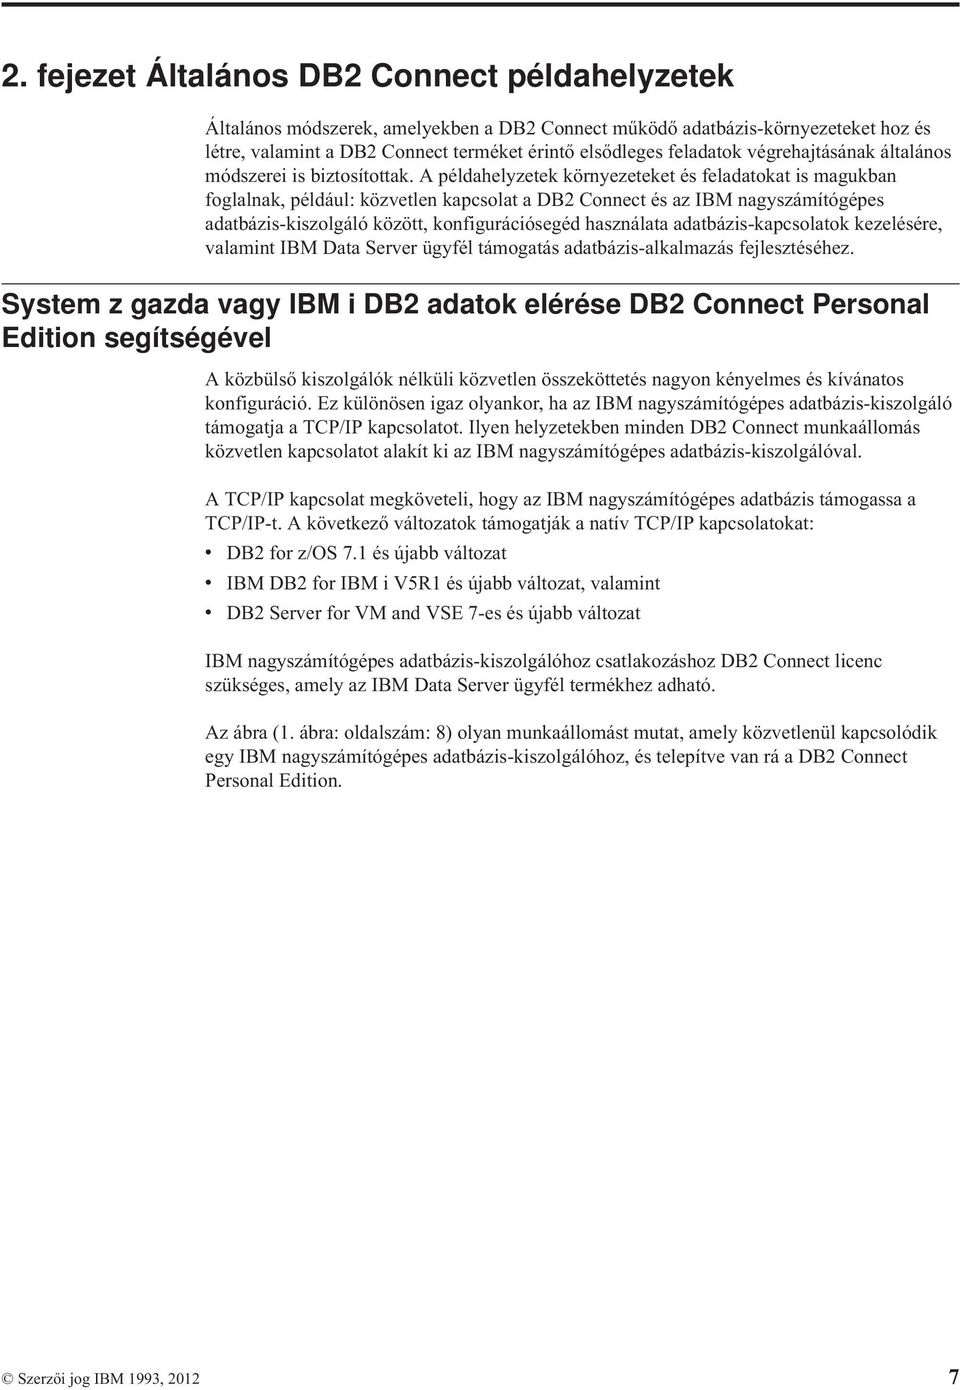 A példahelyzetek környezeteket és feladatokat is magukban foglalnak, például: közvetlen kapcsolat a DB2 Connect és az IBM nagyszámítógépes adatbázis-kiszolgáló között, konfigurációsegéd használata